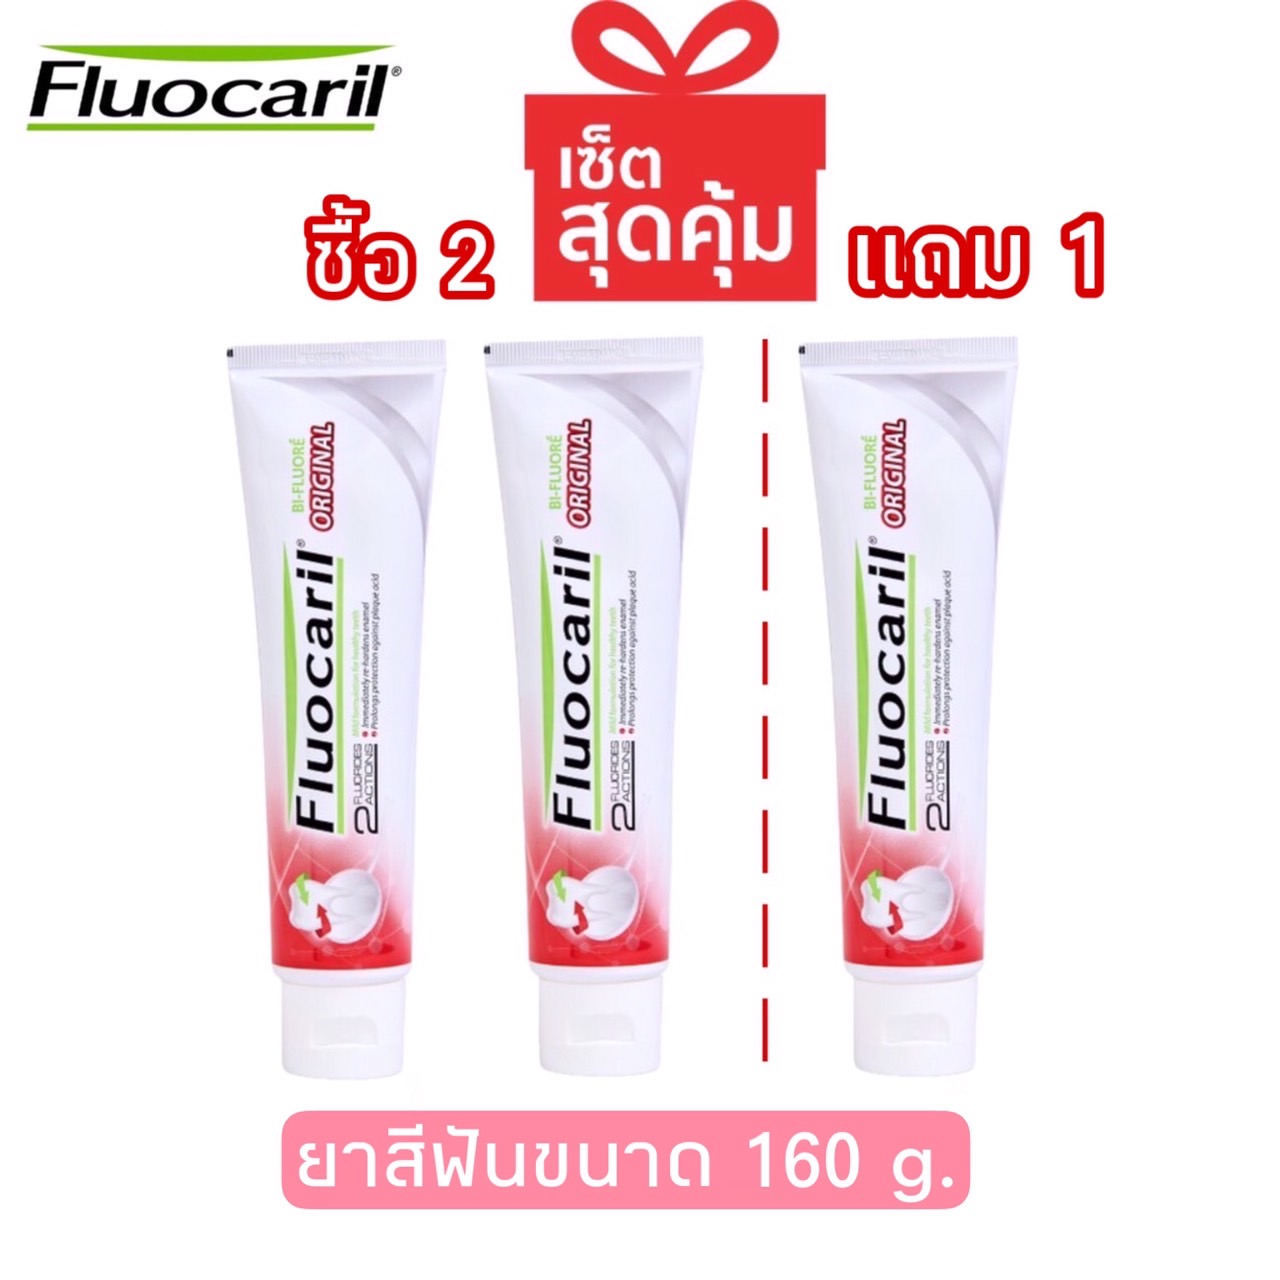 โปรโมชั่น แพ็คสุดคุ้ม ซื้อ2แถม1 Fluocaril Original Toothpast 160 กรัม ฟลูโอคารีล ยาสีฟัน สูตรออริจินัล 160 ก.แพ็ค2หลอด แถมฟรี 1หลอด